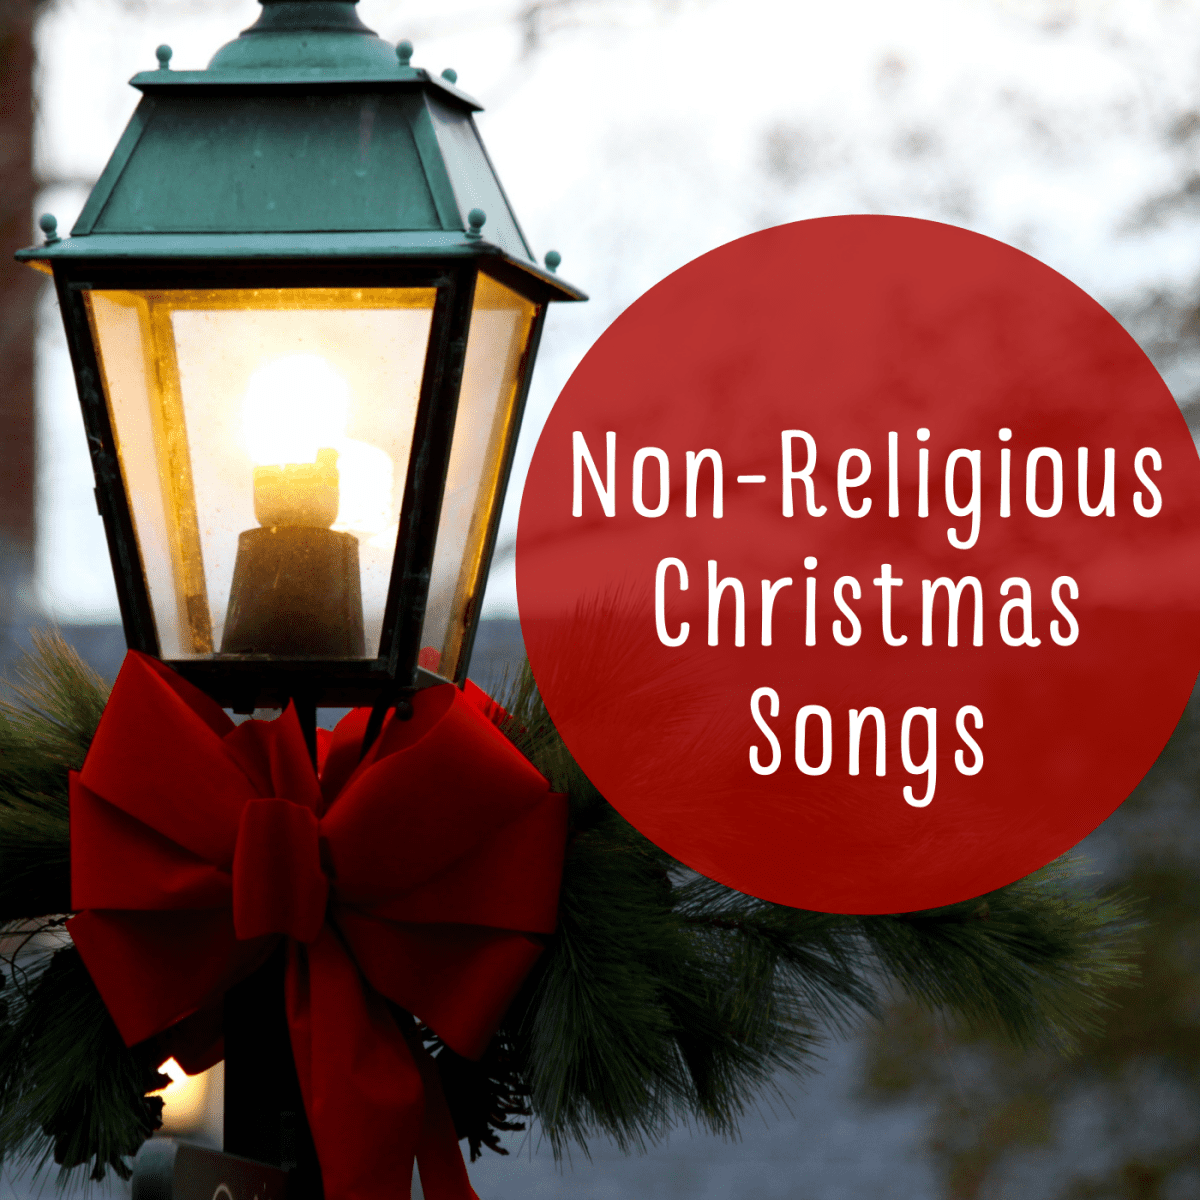 Nếu bạn muốn tìm kiếm danh sách phát những bài hát Giáng sinh không tôn giáo để thưởng thức cùng bạn bè và gia đình, đừng bỏ lỡ những ca khúc tuyệt vời trong bộ sưu tập của chúng tôi. Với hơn 190 bài hát đặc sắc, bạn có thể tạo ra một không gian âm nhạc đa dạng, gần gũi và thú vị hơn.